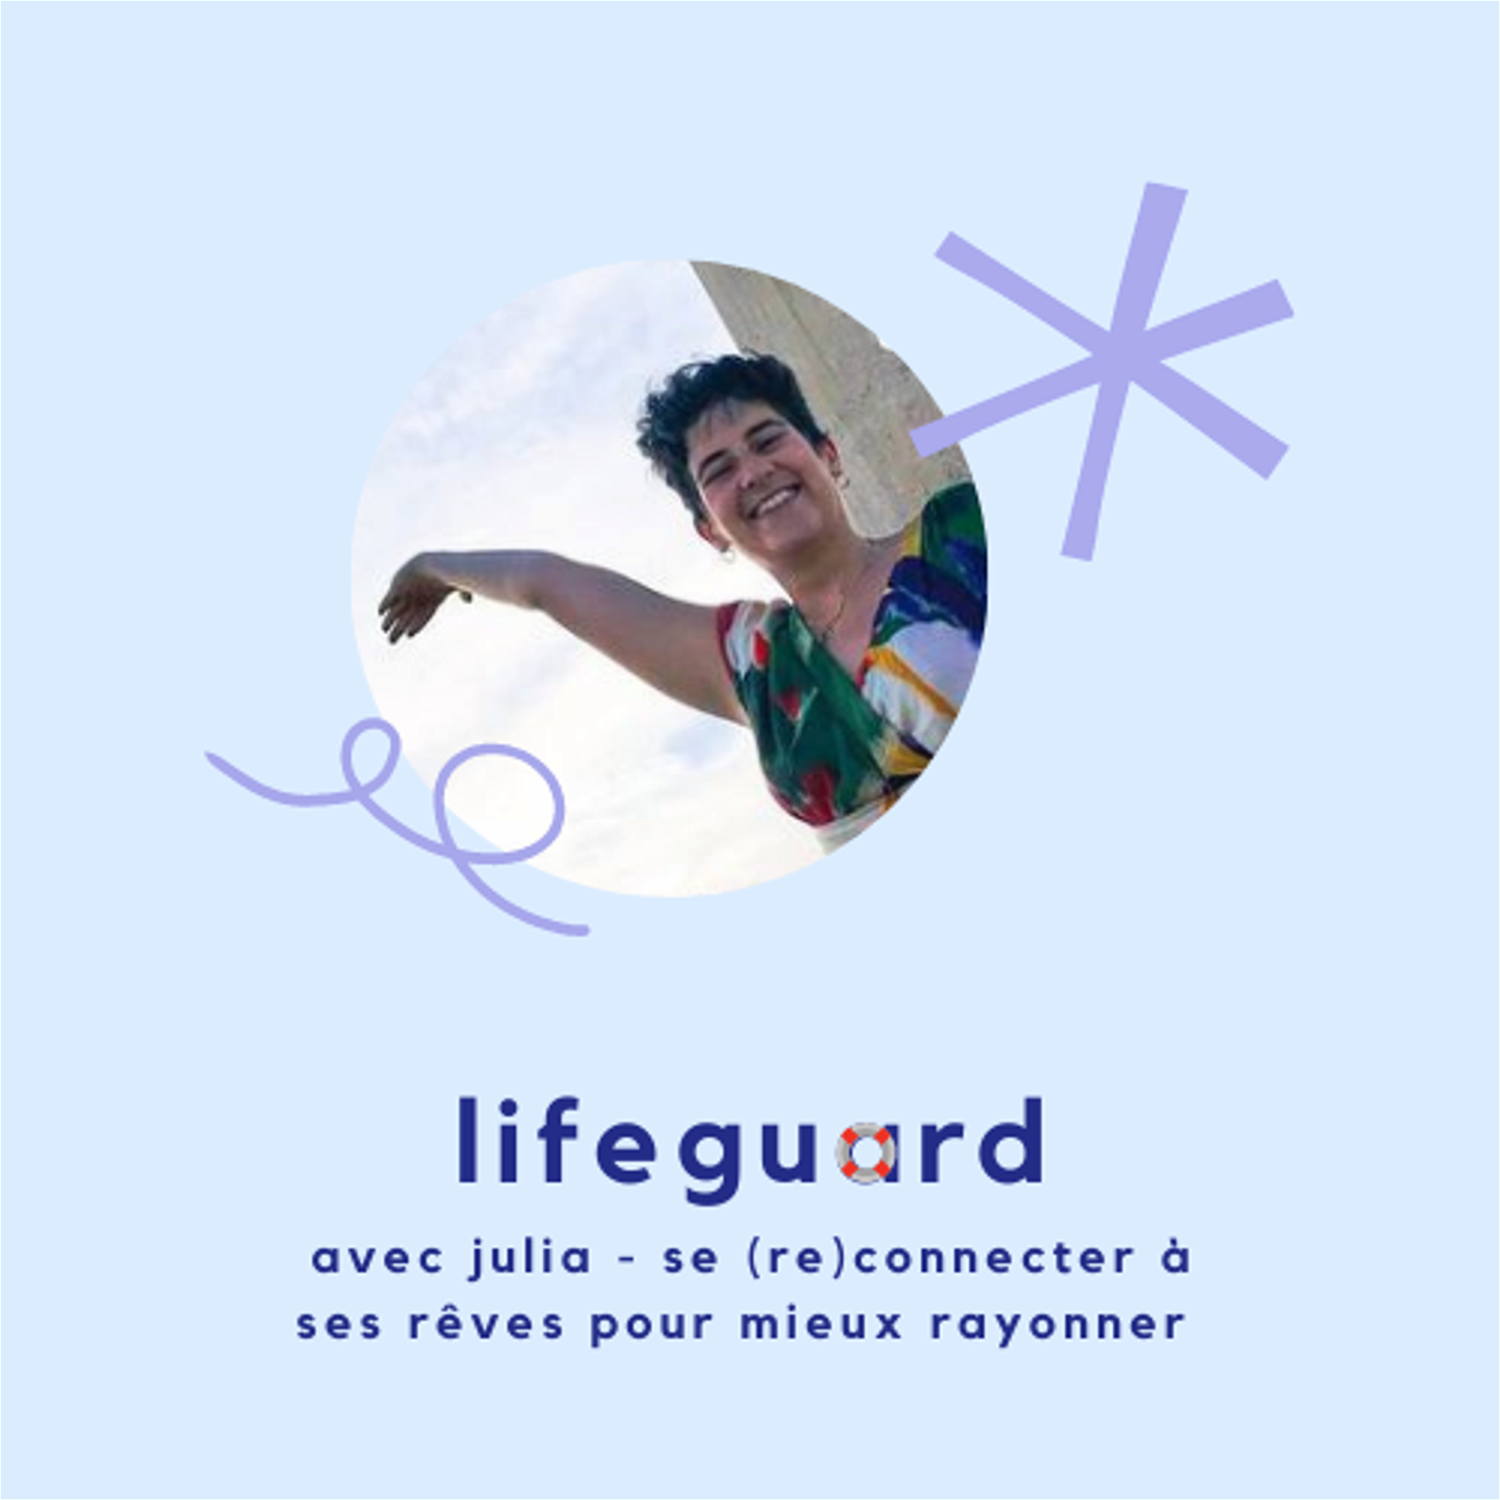 Lifeguard 9 - Julia, se reconnecter à ses rêves pour mieux rayonner.png